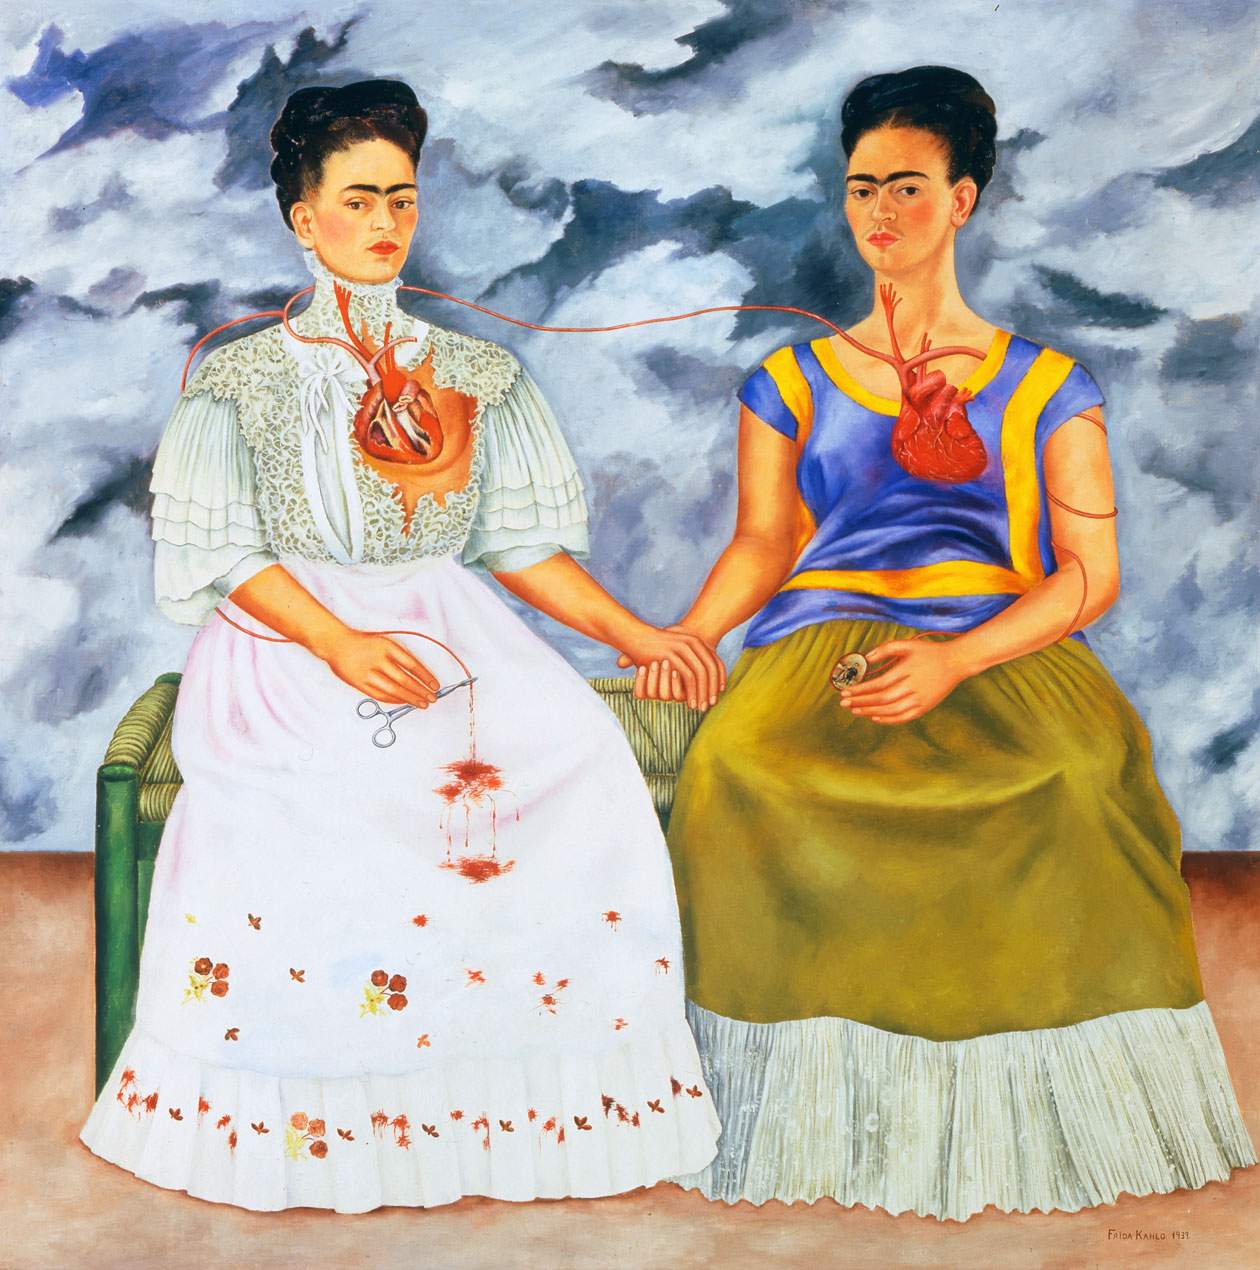 Frida Kahlo. Life and works among naÃ¯ve art, surrealism, and muralism